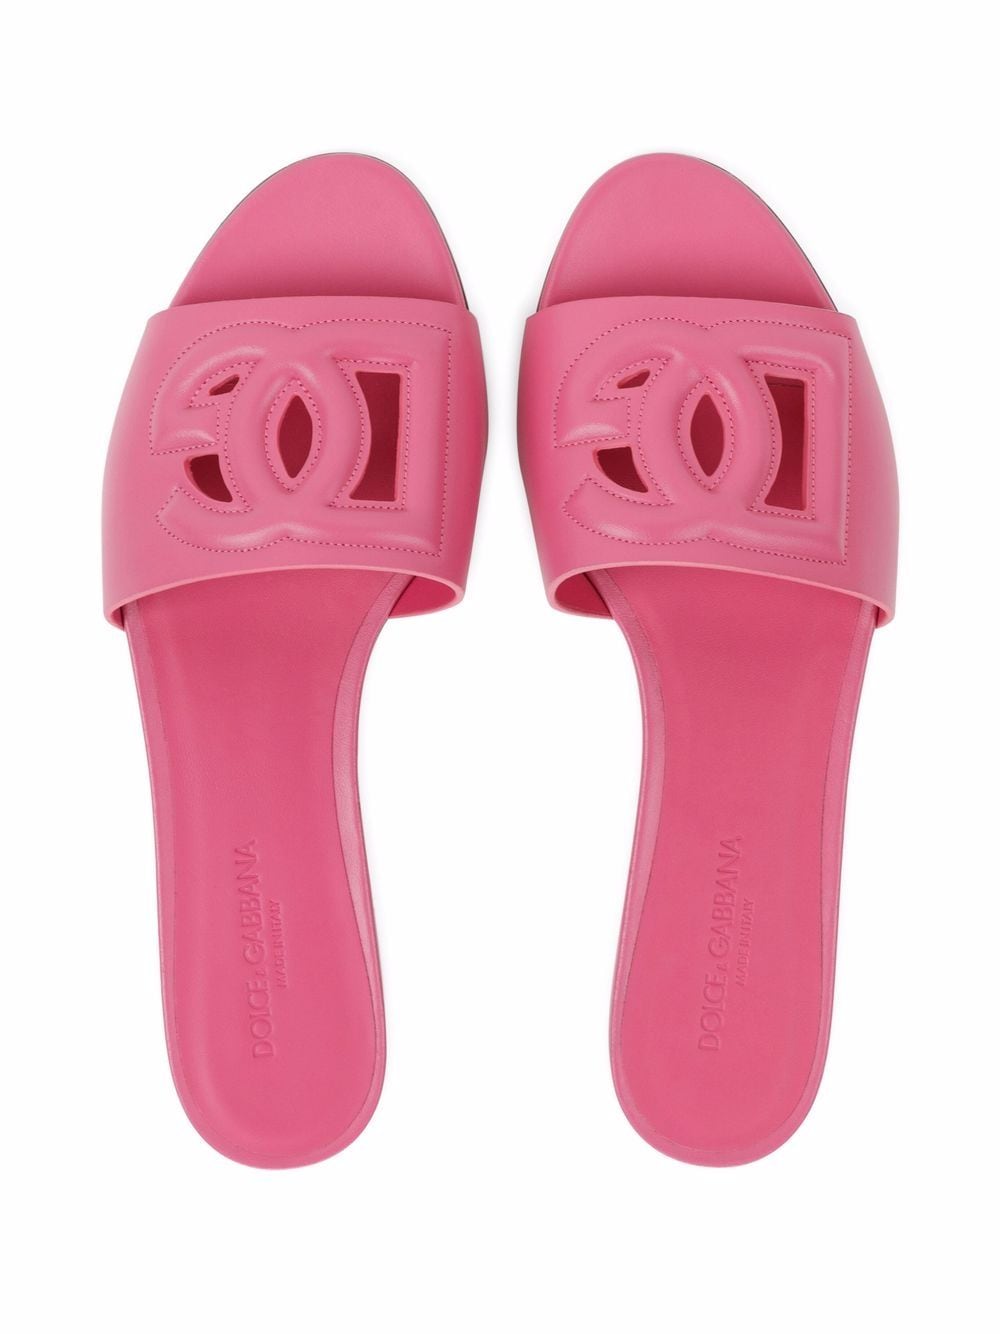 Pink DG-logo leather sandals<BR/><BR/><BR/>